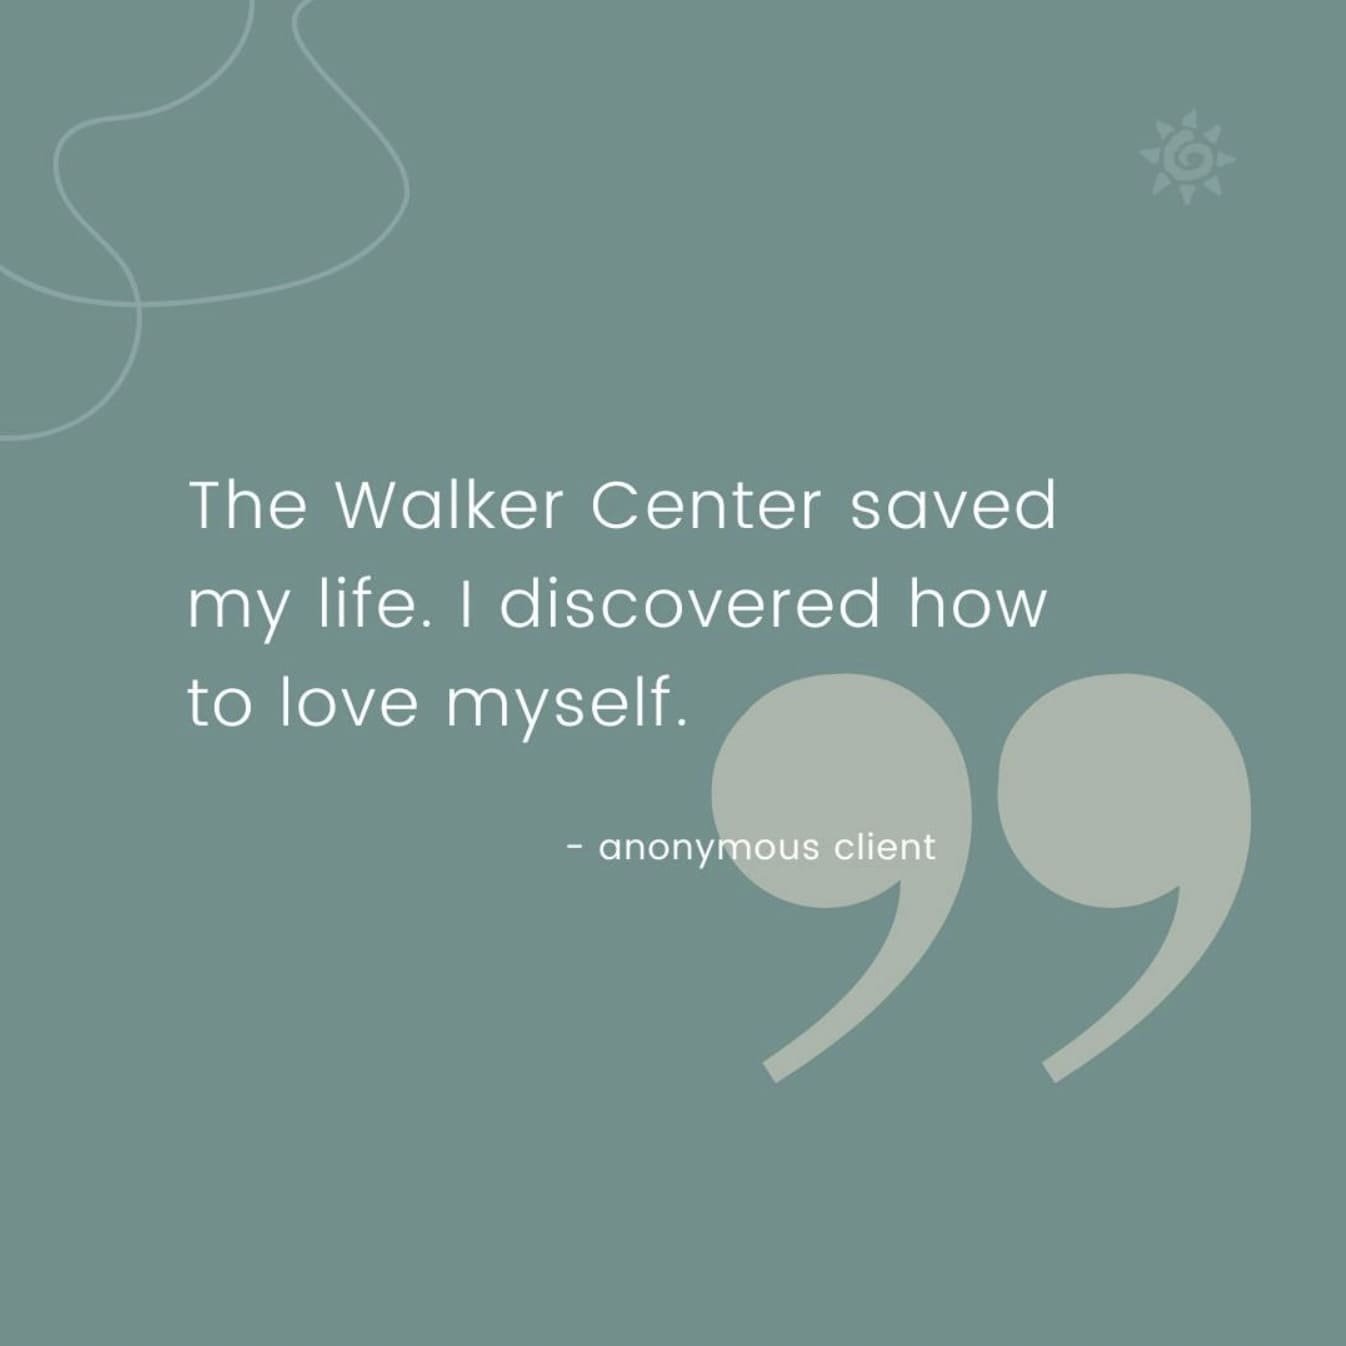 walker center testimonial 6.jpg